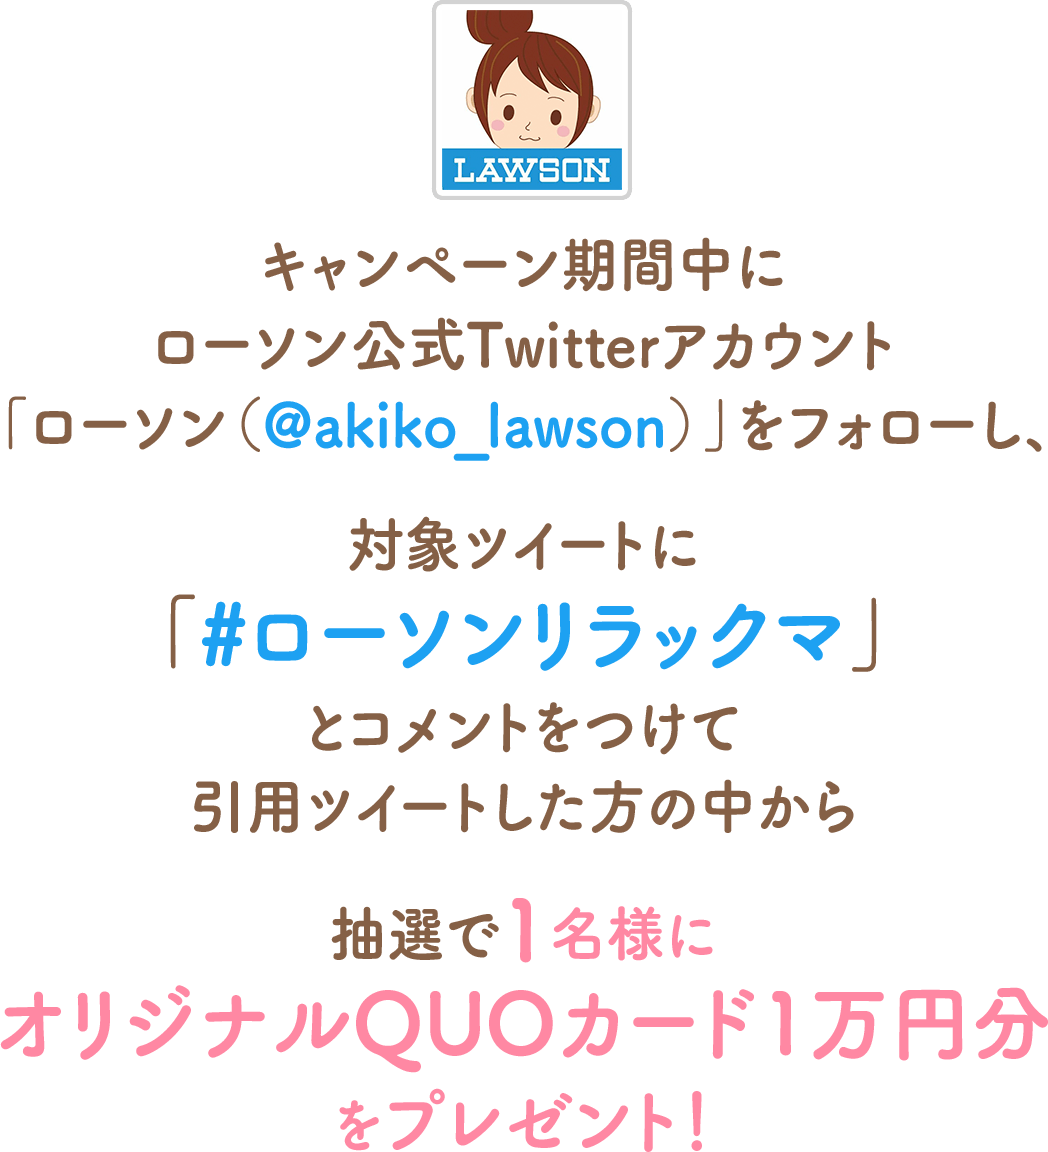 キャンペーン期間中にローソン公式Twitterアカウント「ローソン（@akiko_lawson）」をフォローし、対象ツイートに「#ローソンリラックマ」とコメントをつけて引用ツイートした方の中から抽選で1名様にオリジナルQUOカード1万円分をプレゼント！